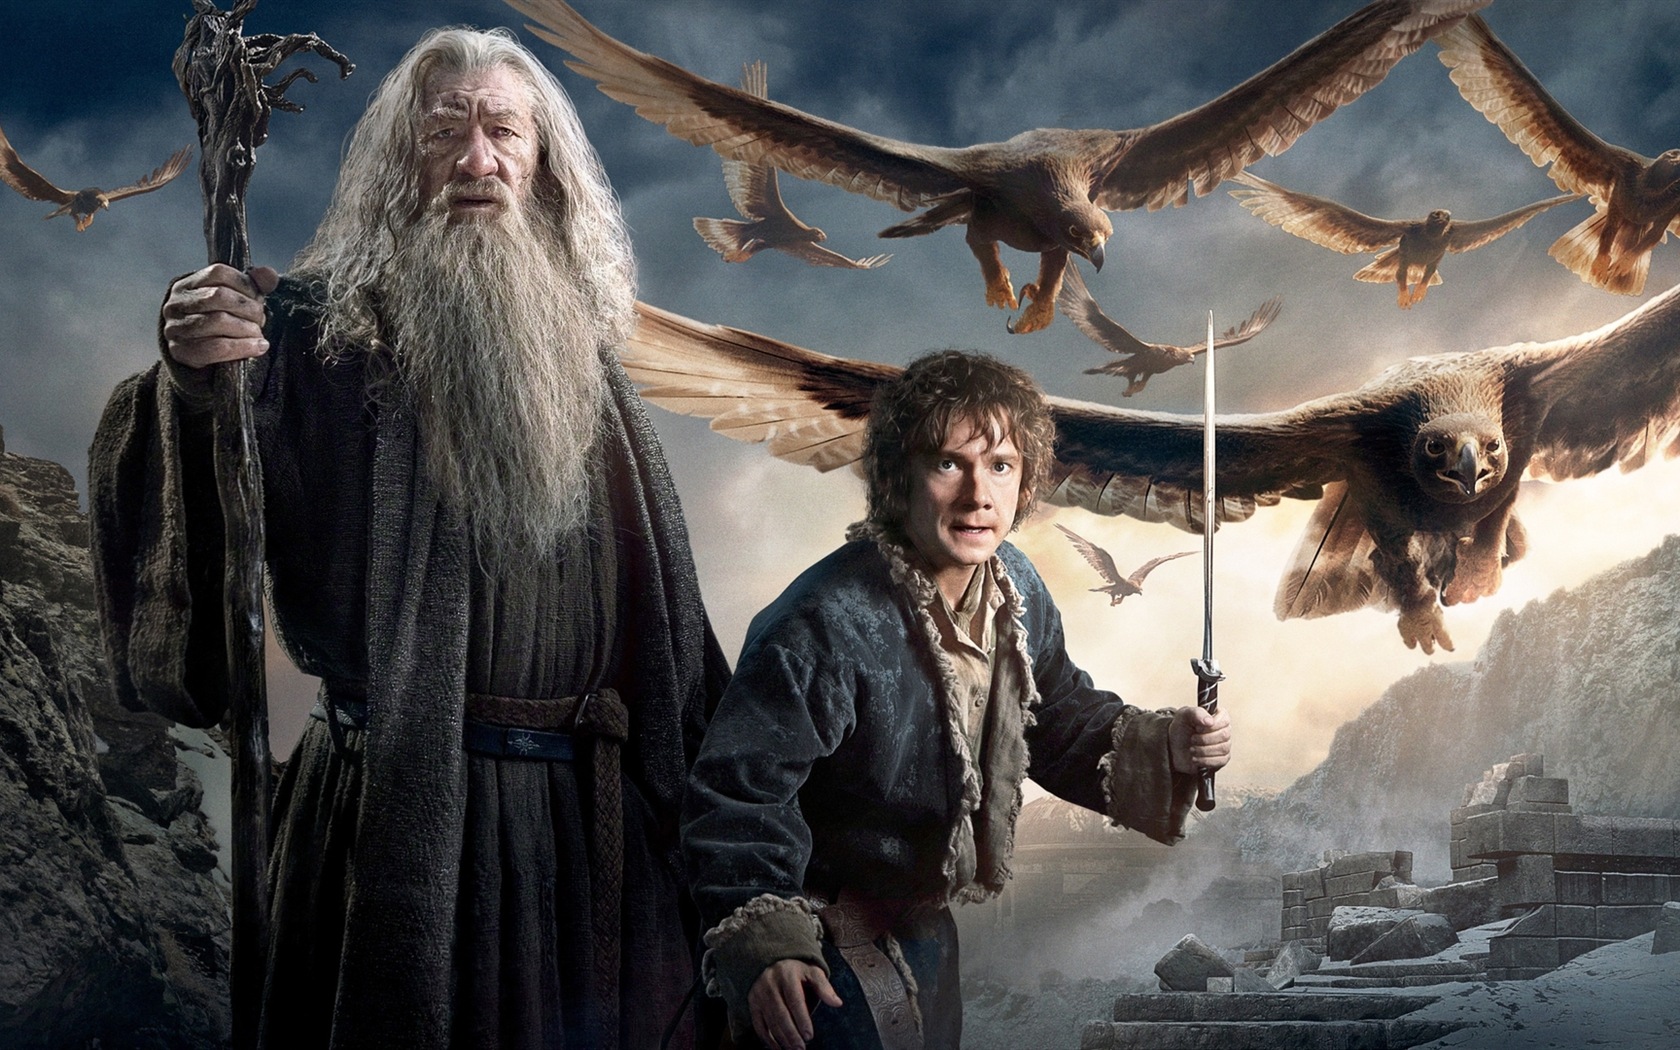 El Hobbit: La Batalla de los Cinco Ejércitos, fondos de pantalla de películas de alta definición #4 - 1680x1050